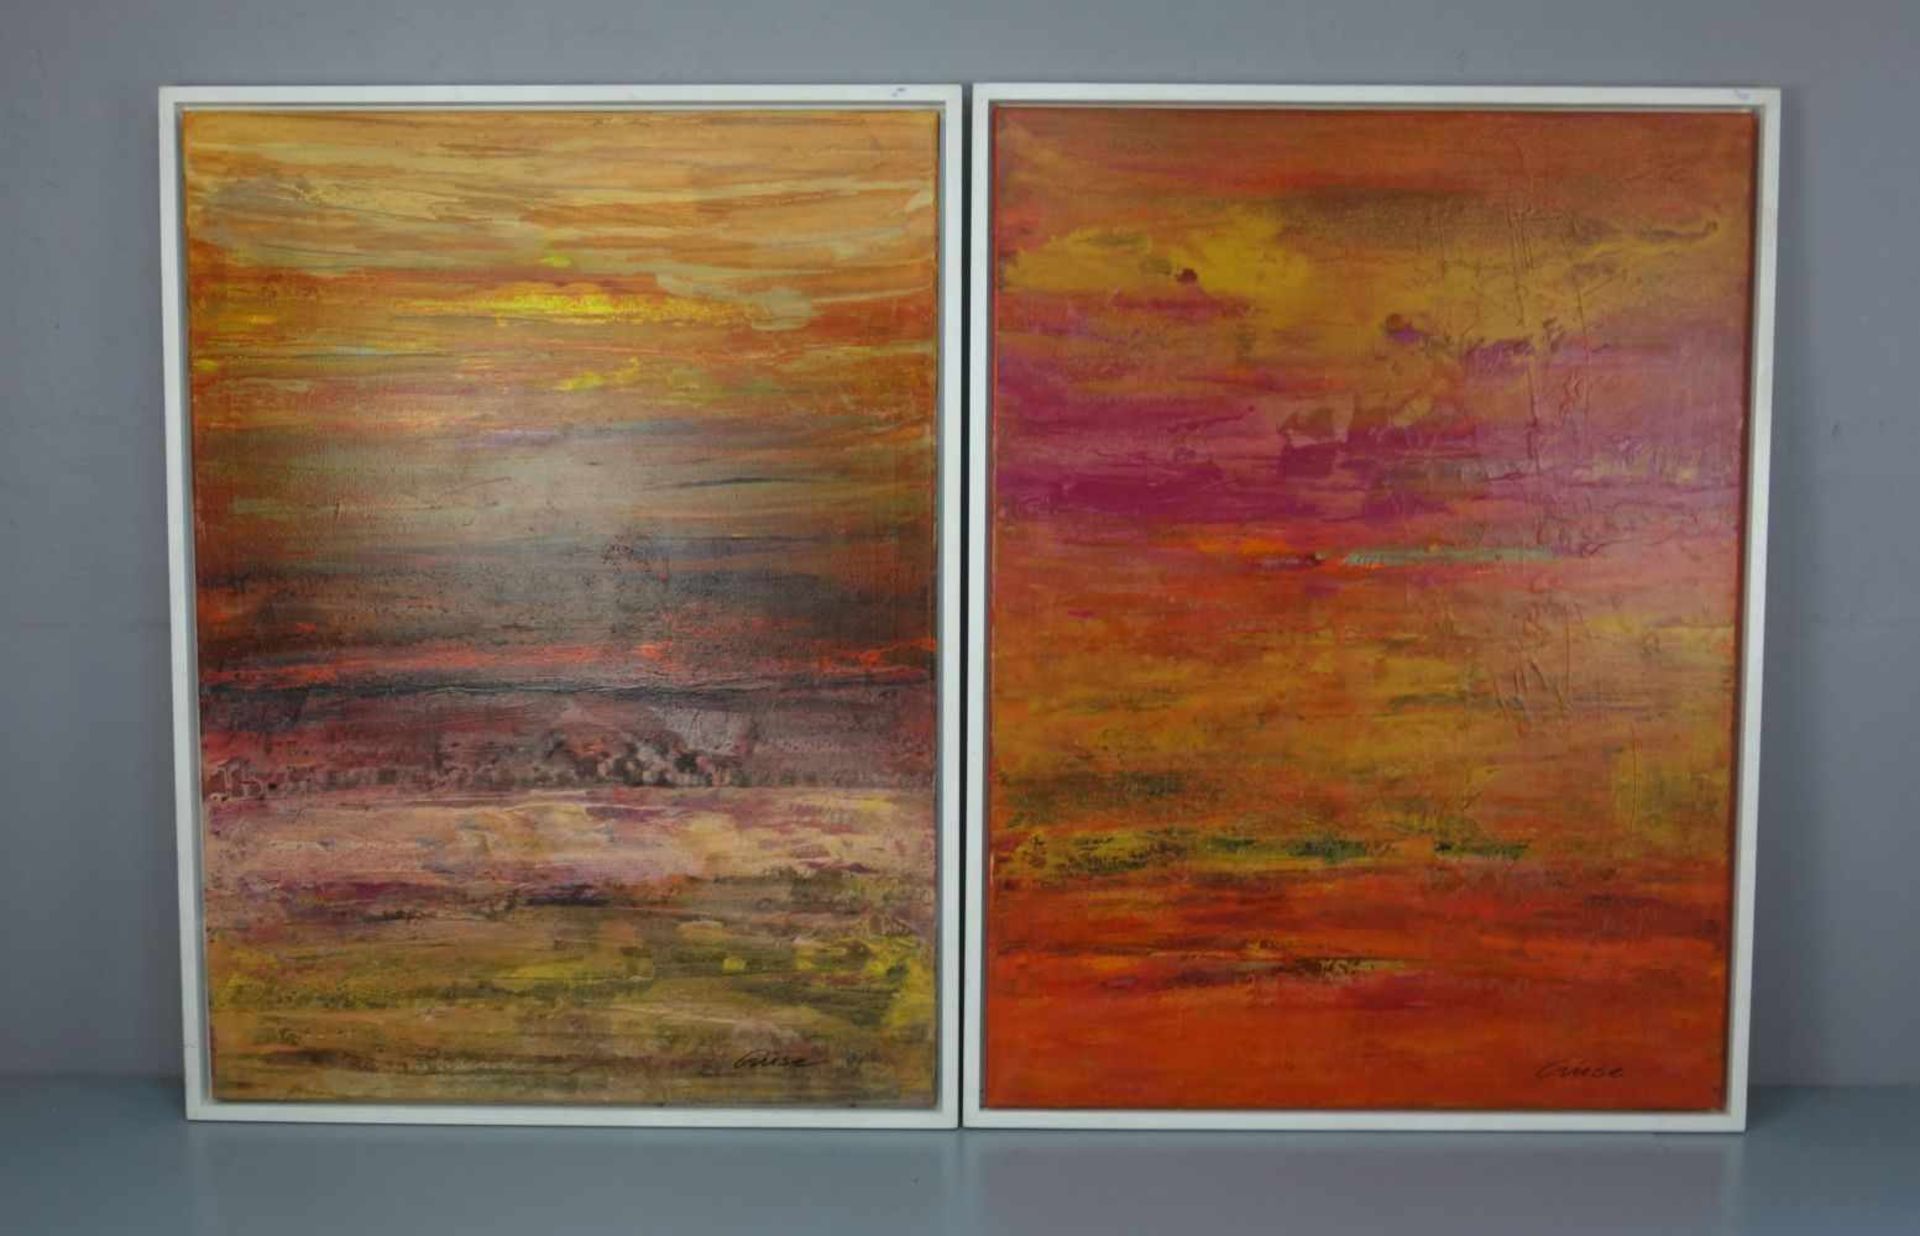 CRUSE, GISELA (geb. 1941 in Rheine), Paar Gemälde / painting: "Diptychon", 2007, Mischtechnik auf